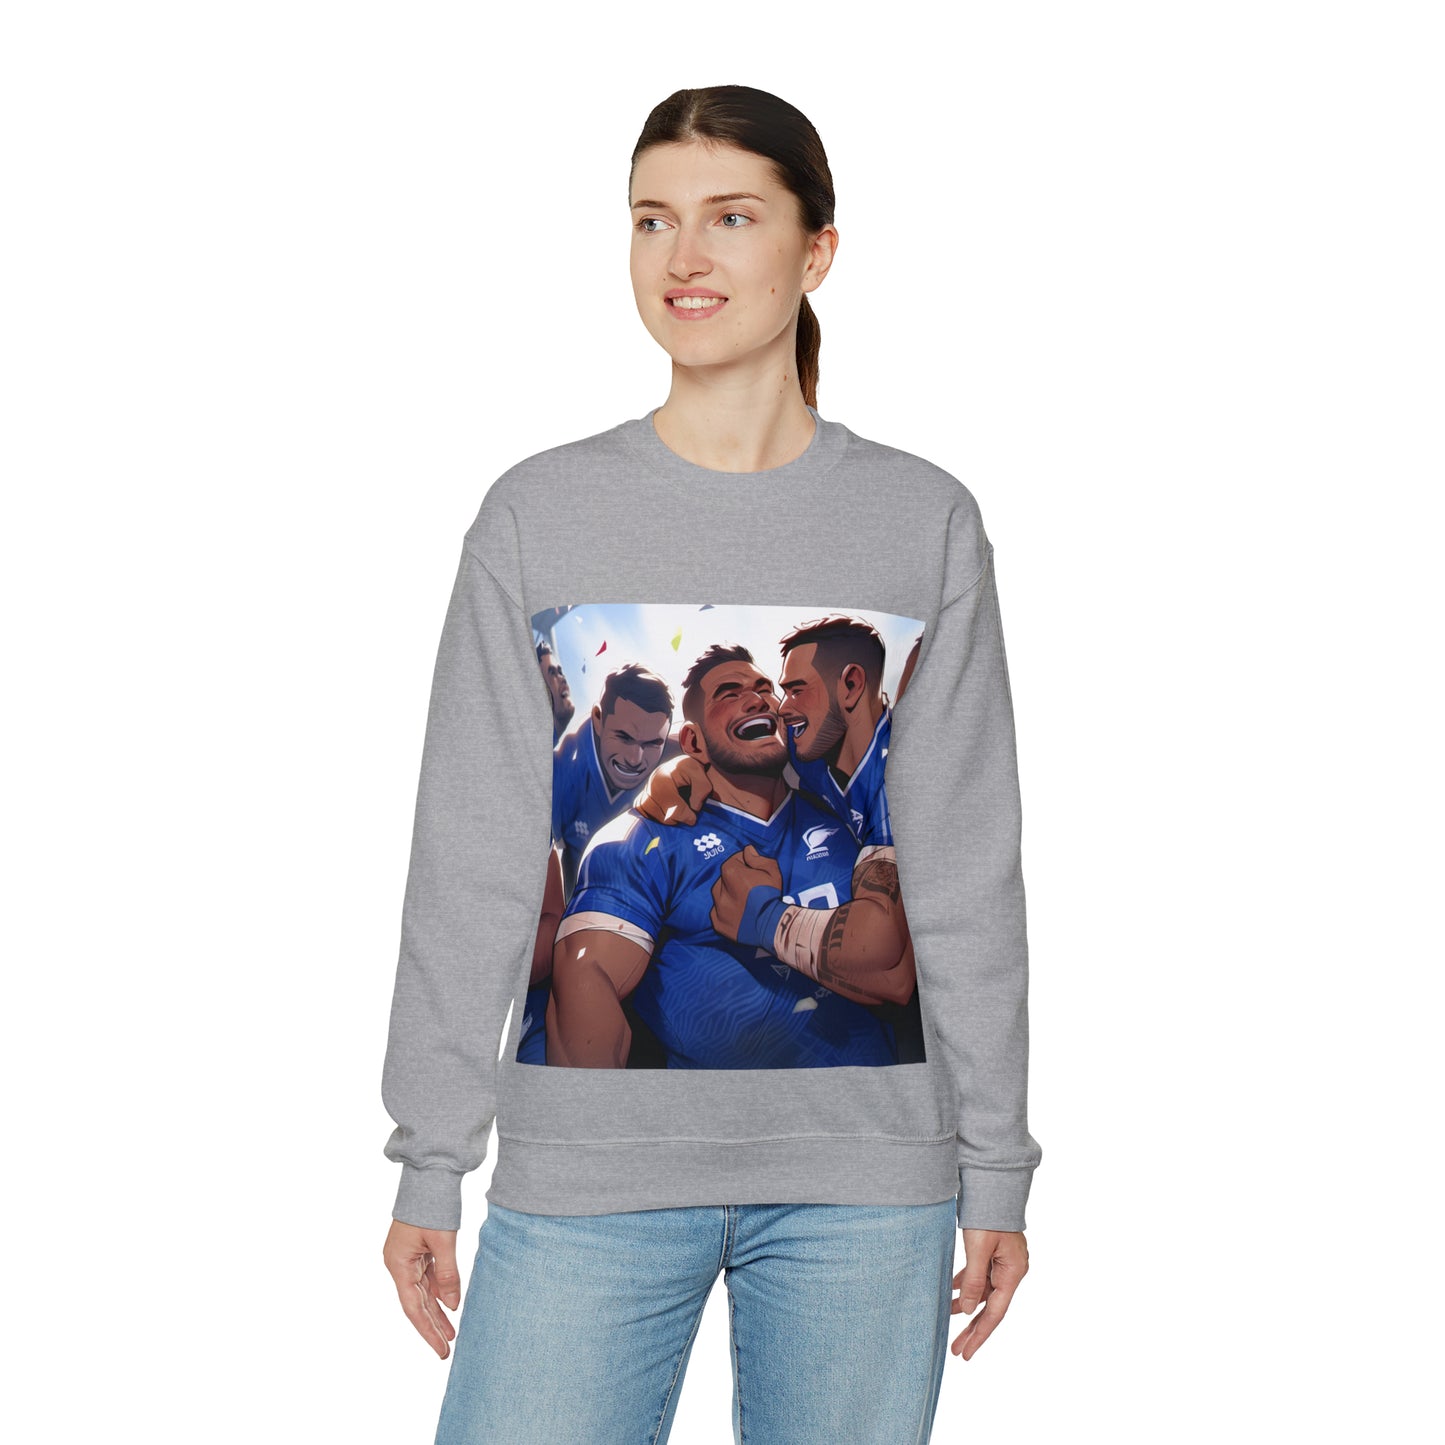 Post Match Samoa - light sweatshirts